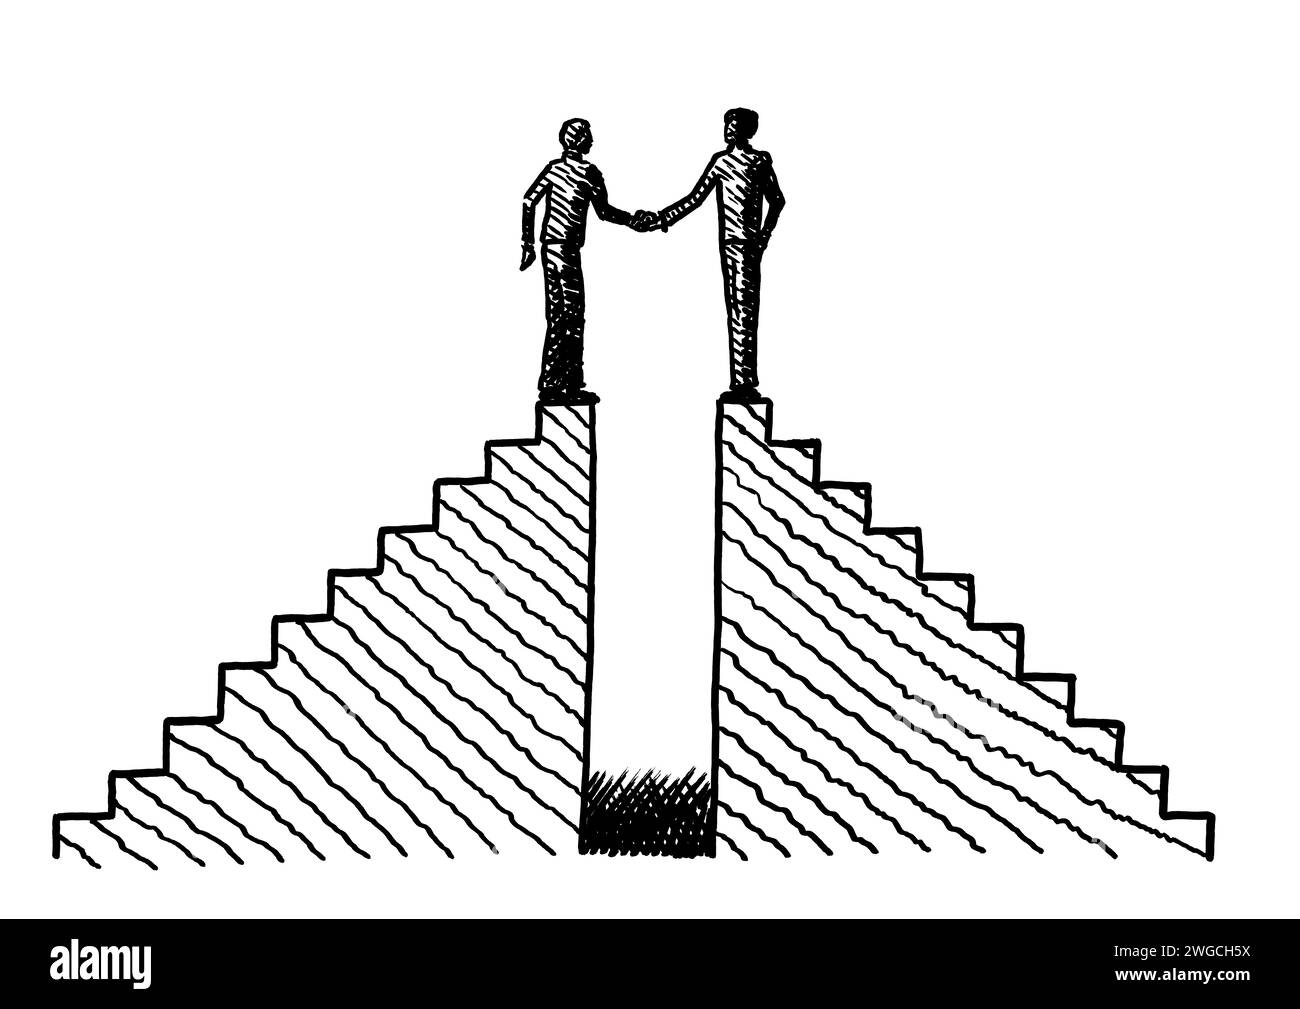 Disegnato a mano uno schizzo di due uomini in cima a due scale che stringono la mano. Concetto aziendale per fusione, partnership, cooperazione, accordo, compr Foto Stock